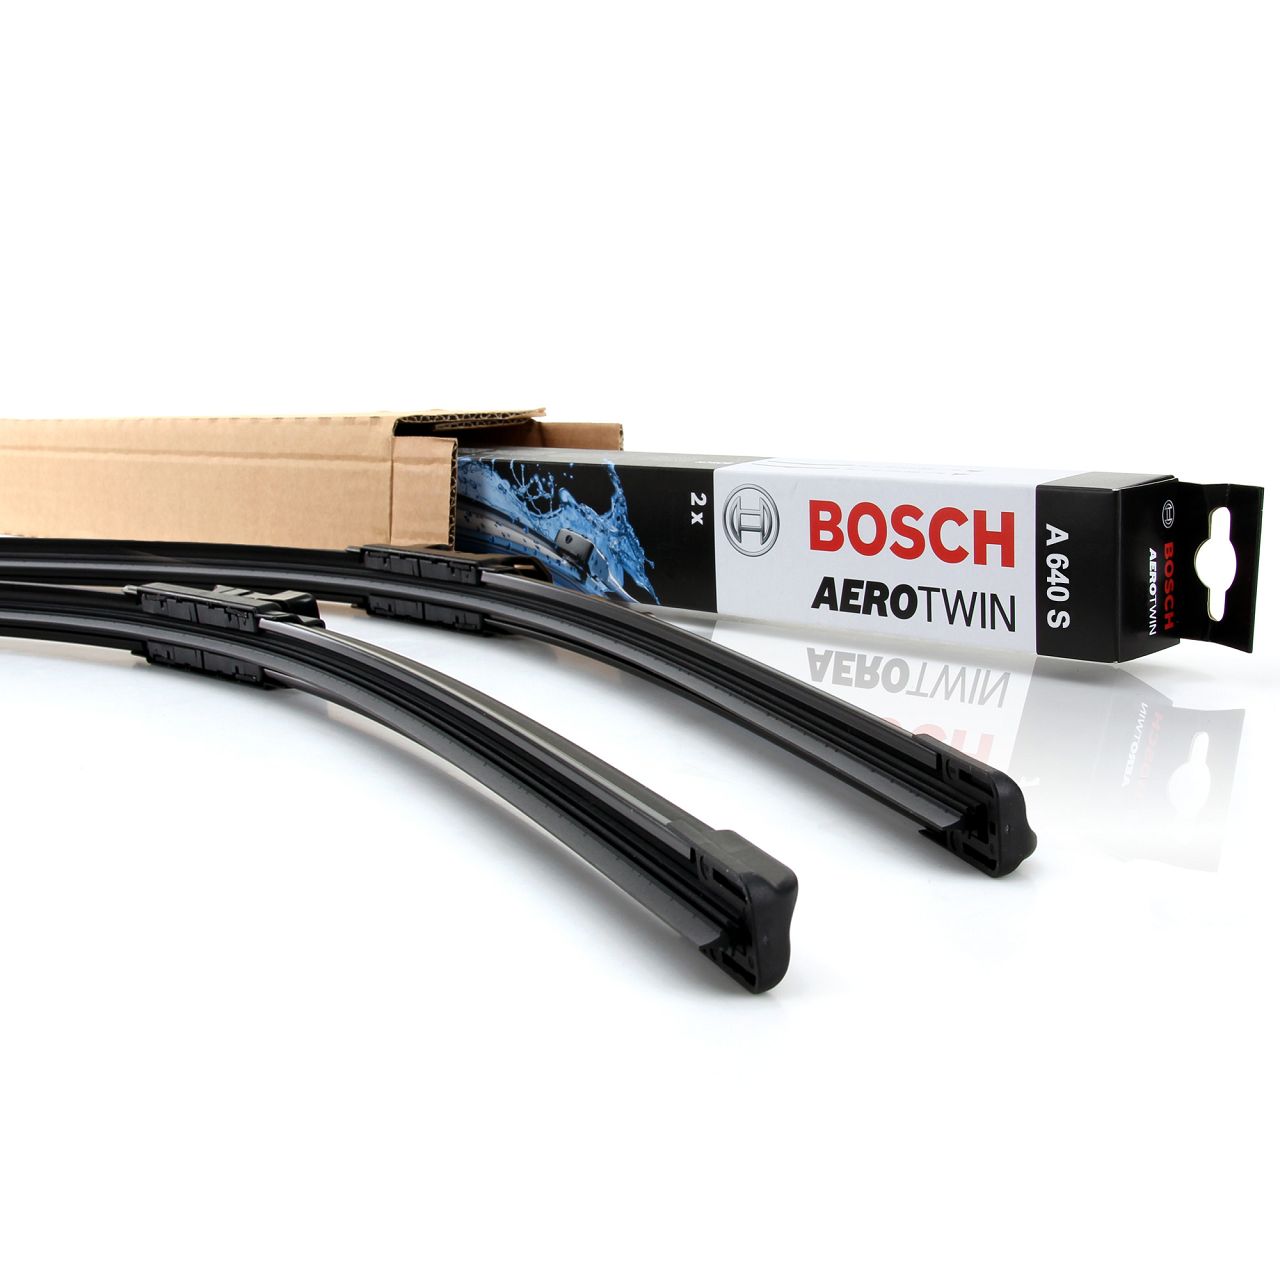 BOSCH A640S AEROTWIN Scheibenwischer Satz FORD Focus 3 MK3 ab 10.2014 vorne